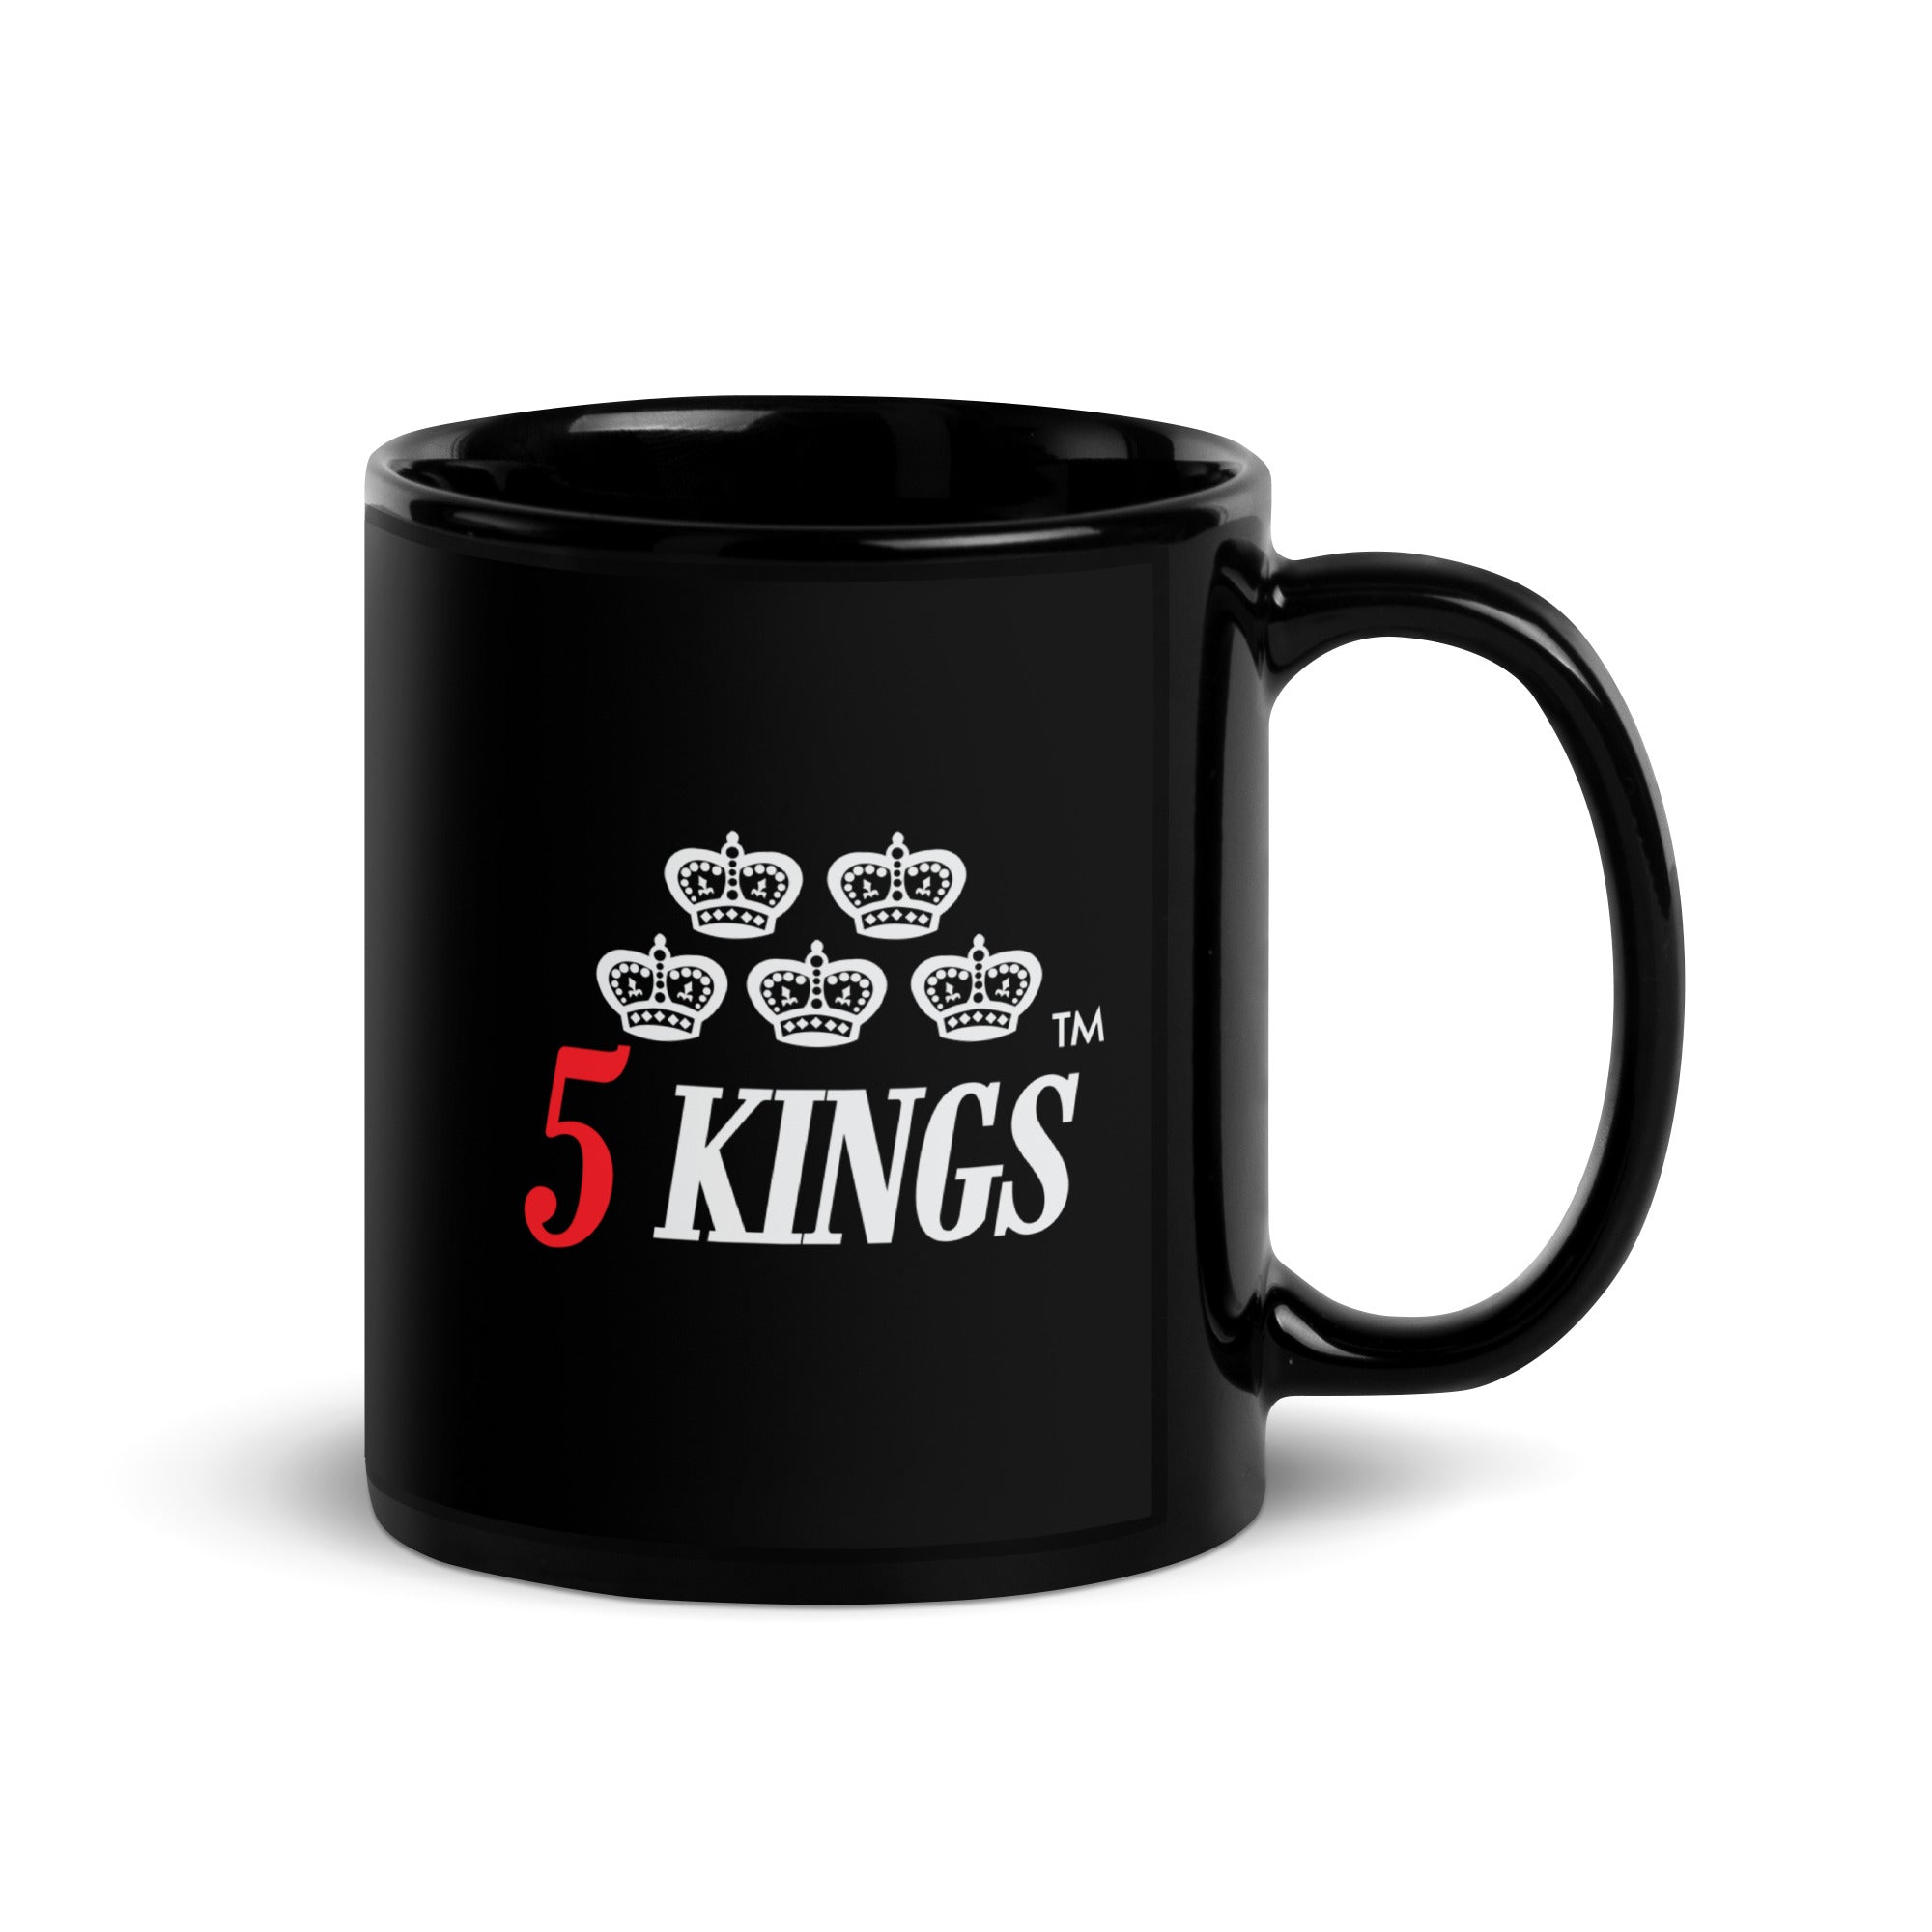 5 KINGS Mug